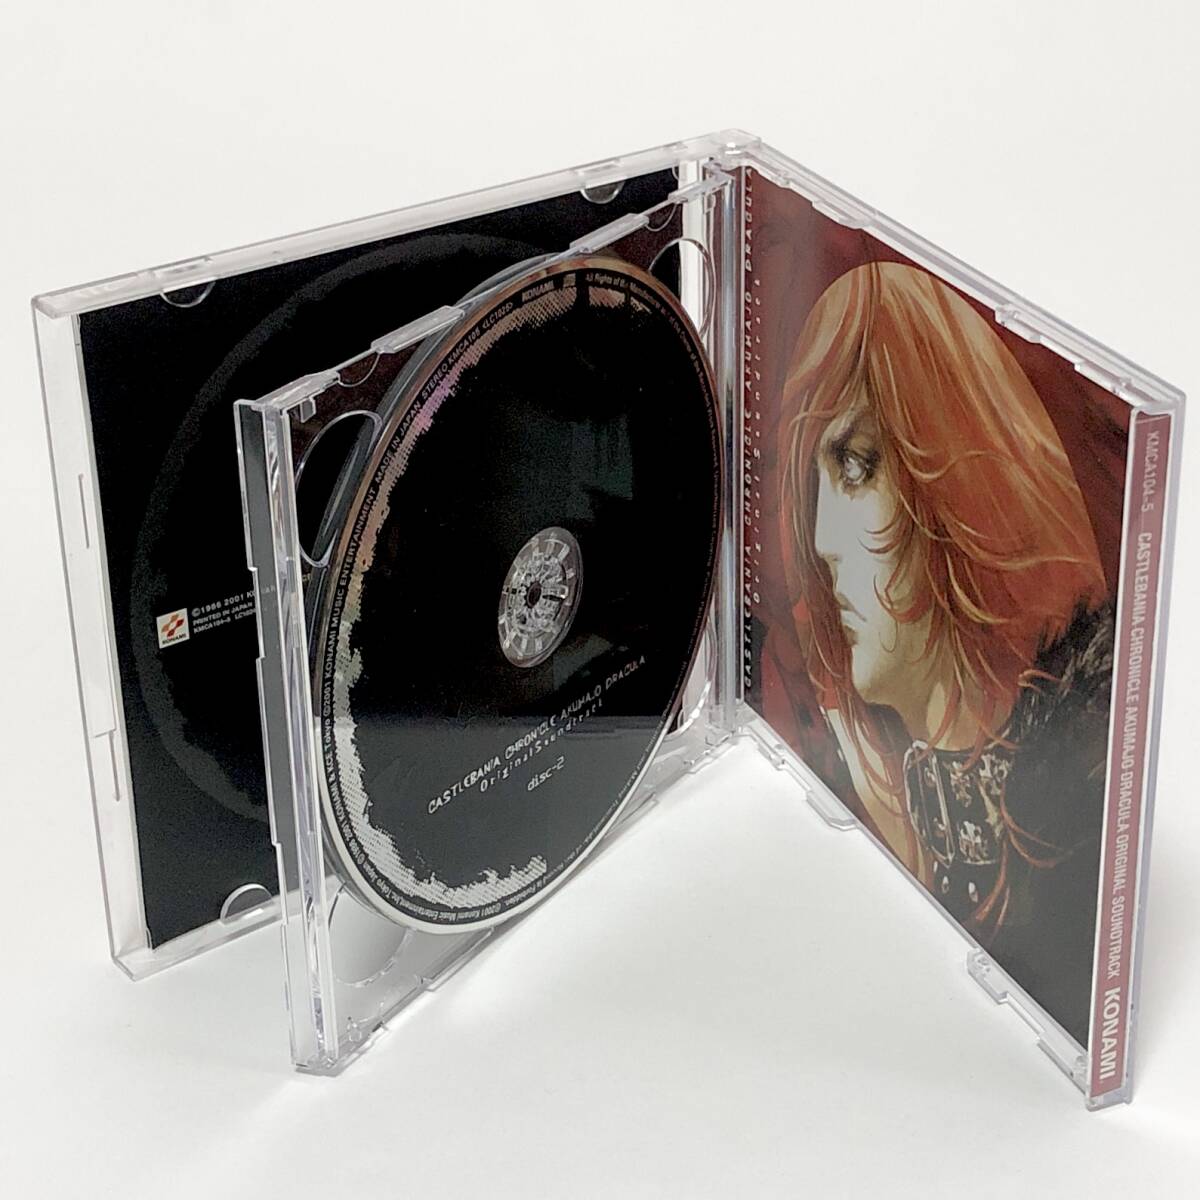 ゲーム音楽CD 2枚組 悪魔城年代記 悪魔城ドラキュラ / Castlevania Chronicle Akumajo Dracula Original Soundtrack 帯付き コナミ _画像6